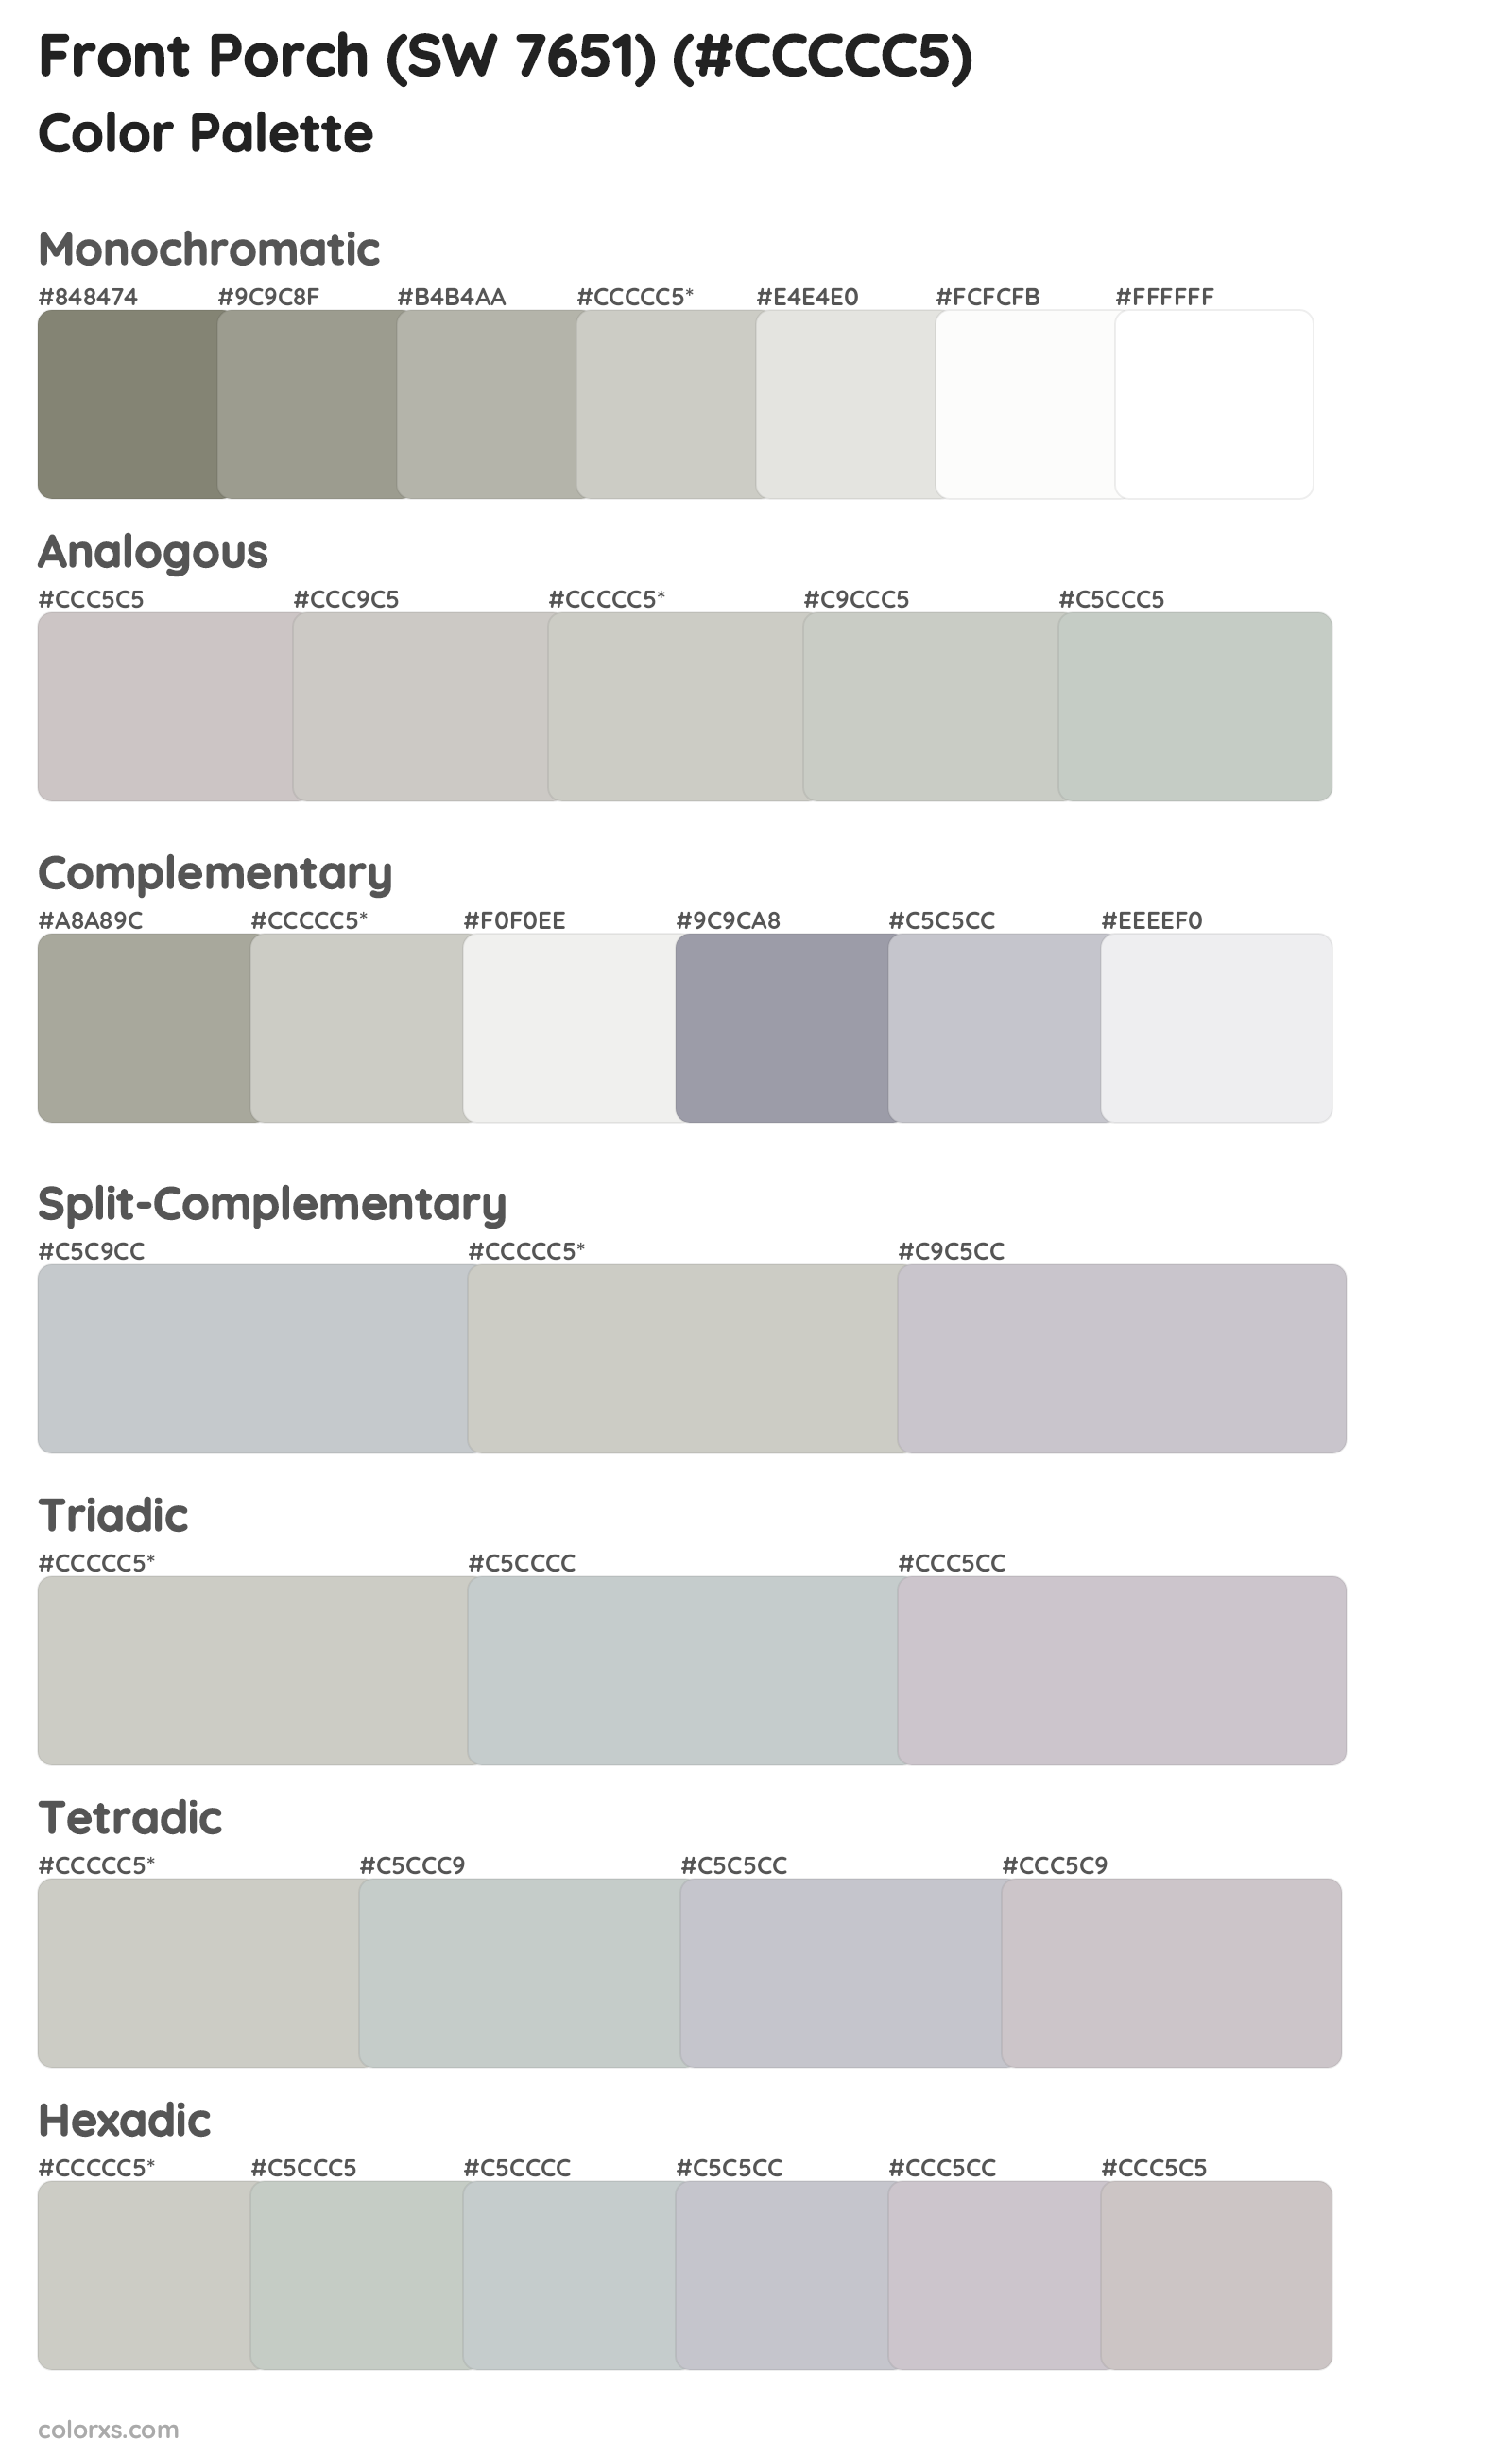 Front Porch (SW 7651) Color Scheme Palettes